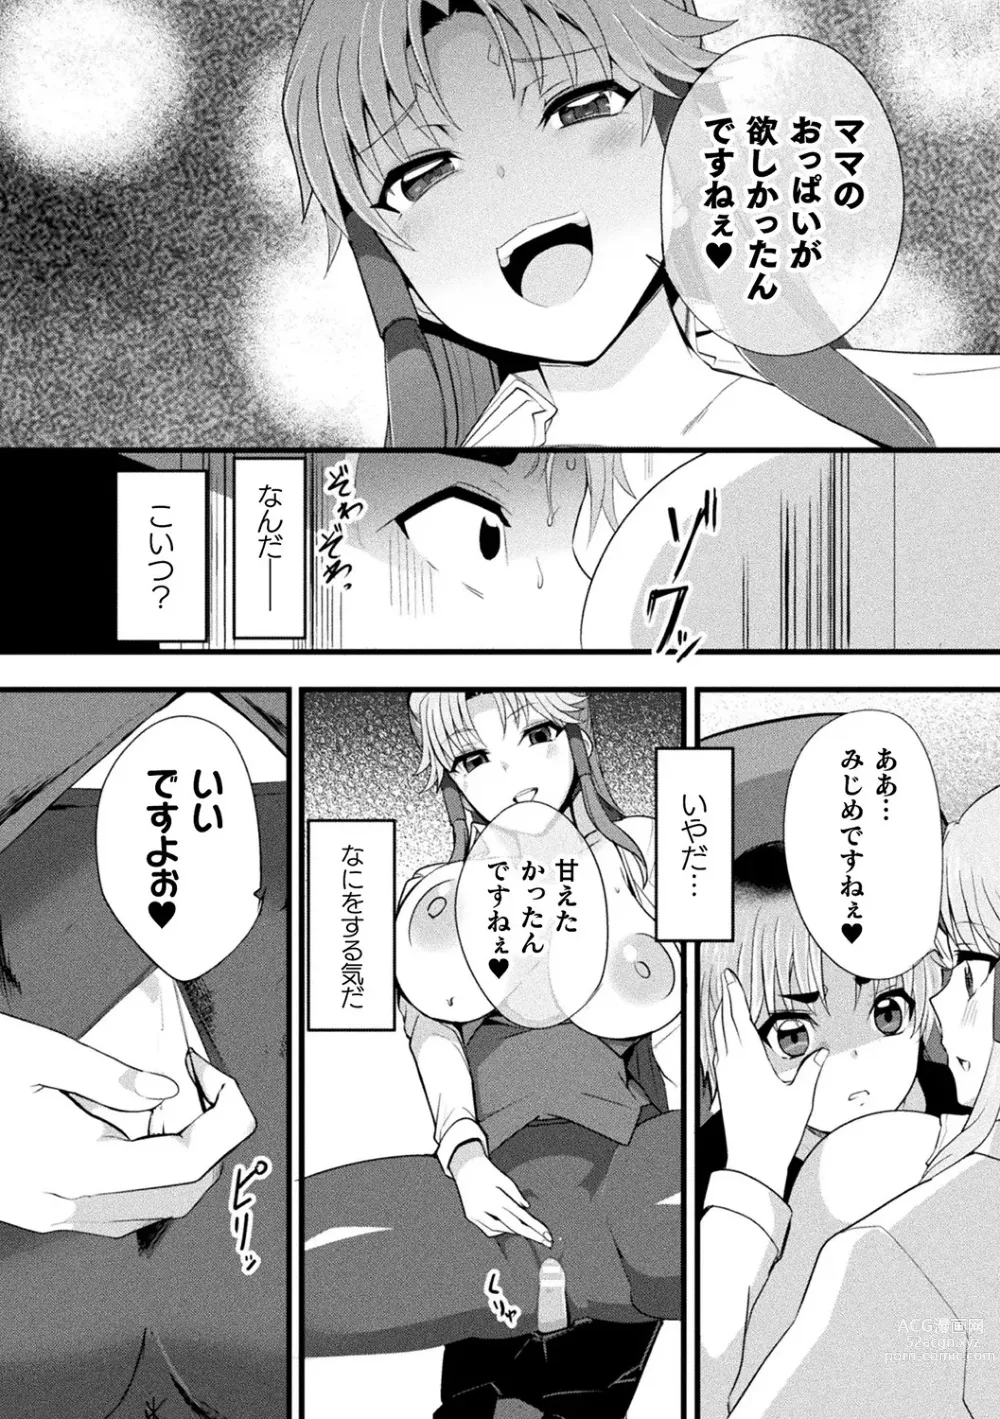 Page 92 of manga Bessatsu Comic Unreal AI ni Wakaraserareru Jinrui Hen Vol. 1